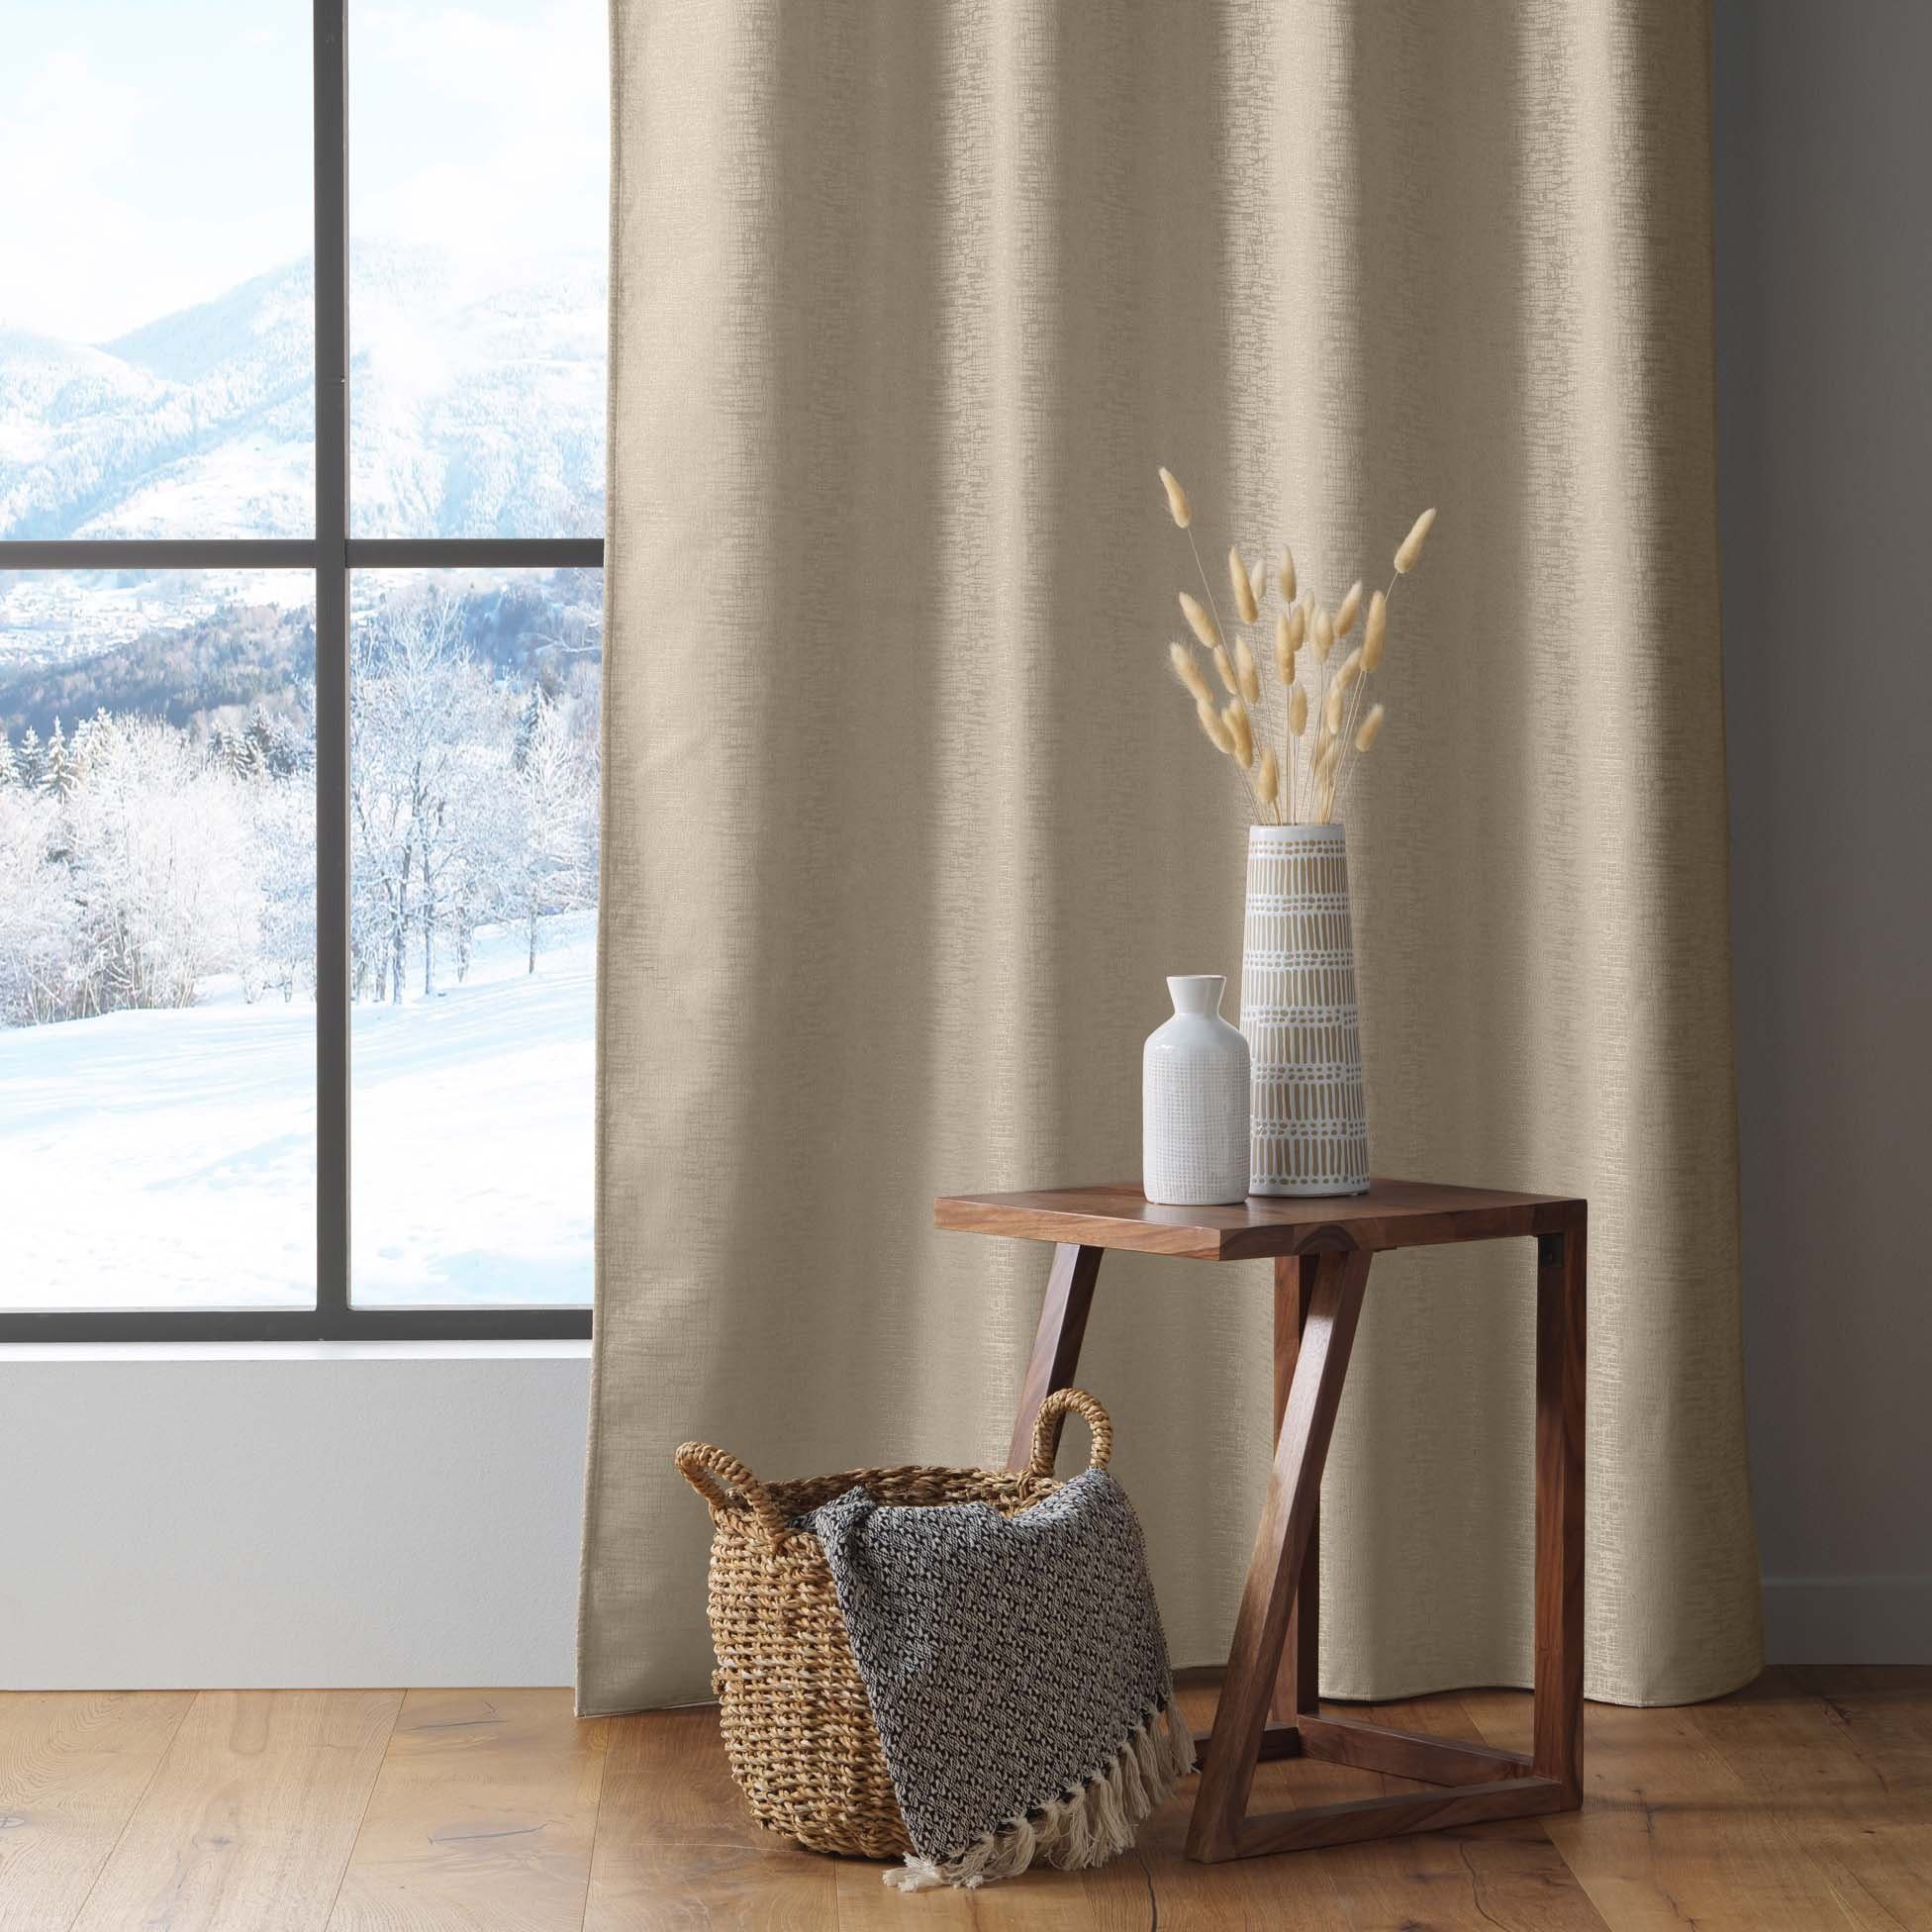 Vorhang, dynamic24, blickdicht Verdunkelung Thermo Schallschutz blickdicht, 140x260cm Ösen, beige Vorhang